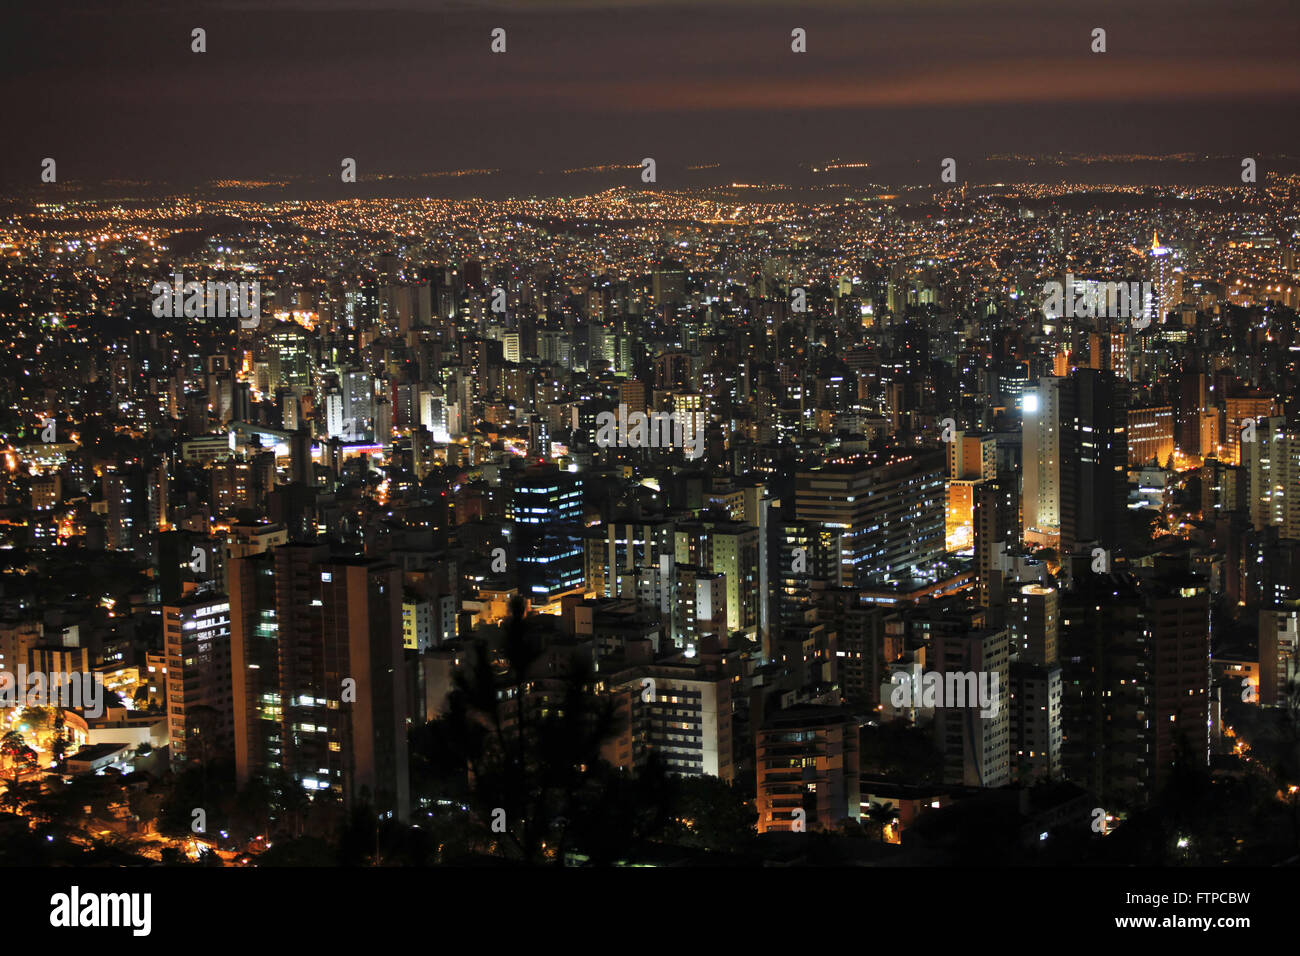 Vista notturna del centro-sud della regione di Belo Horizonte da Lookout Mangabeiras - MG Foto Stock